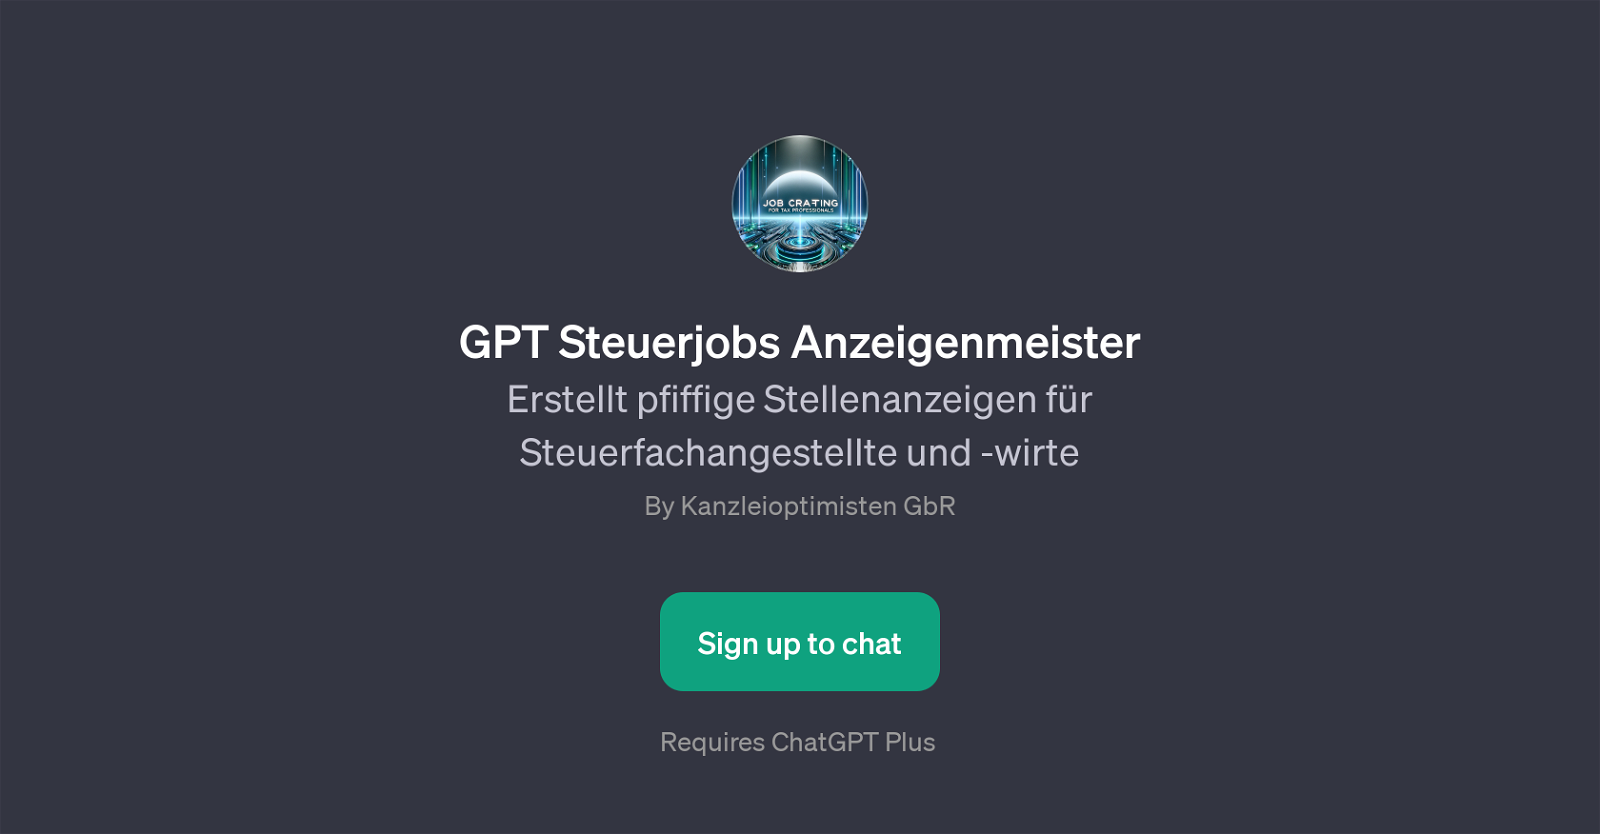 GPT Steuerjobs Anzeigenmeister website